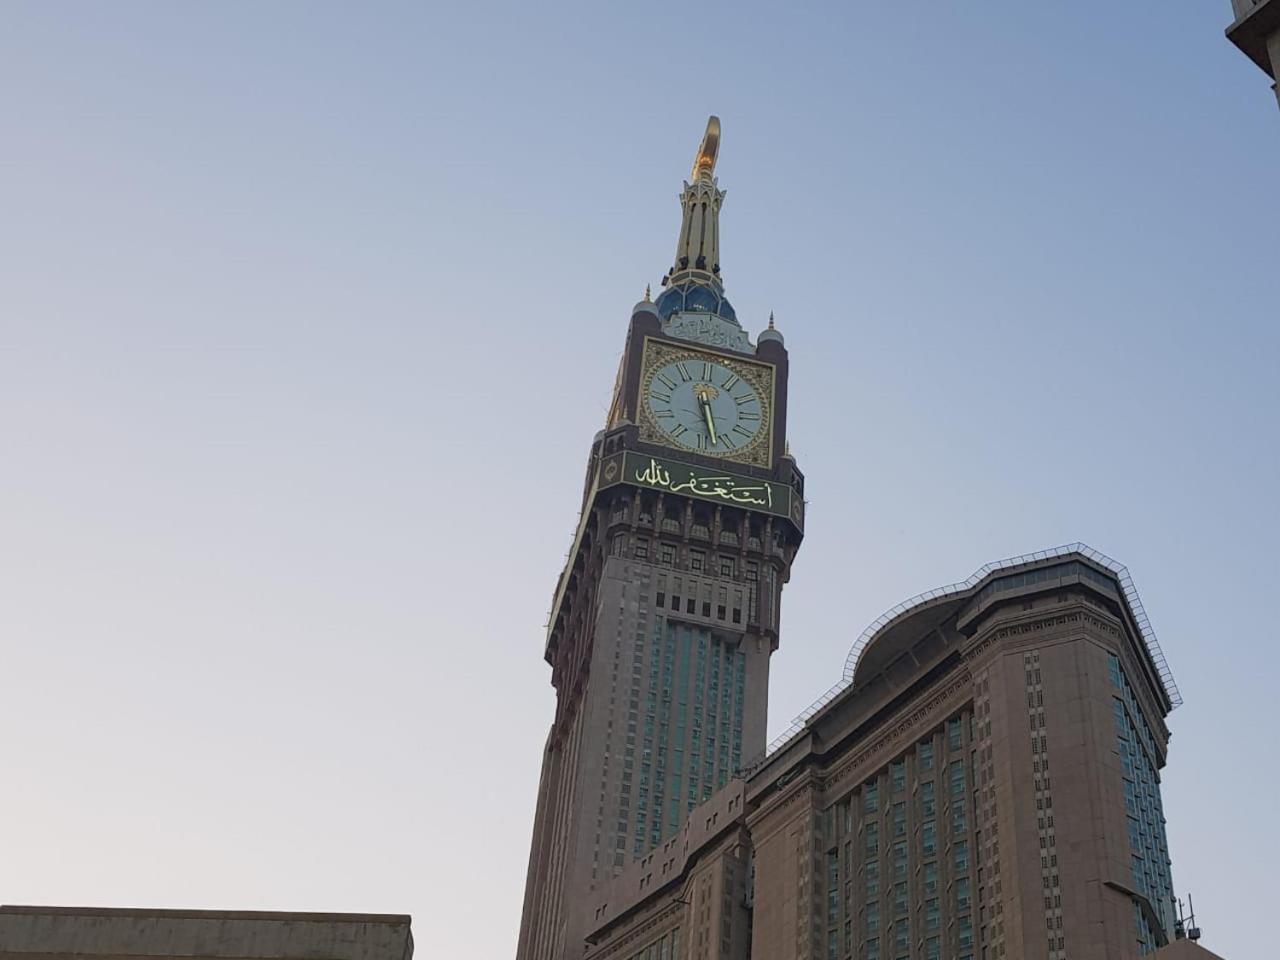 Al Thuria Grand Hotel Mecca Екстер'єр фото